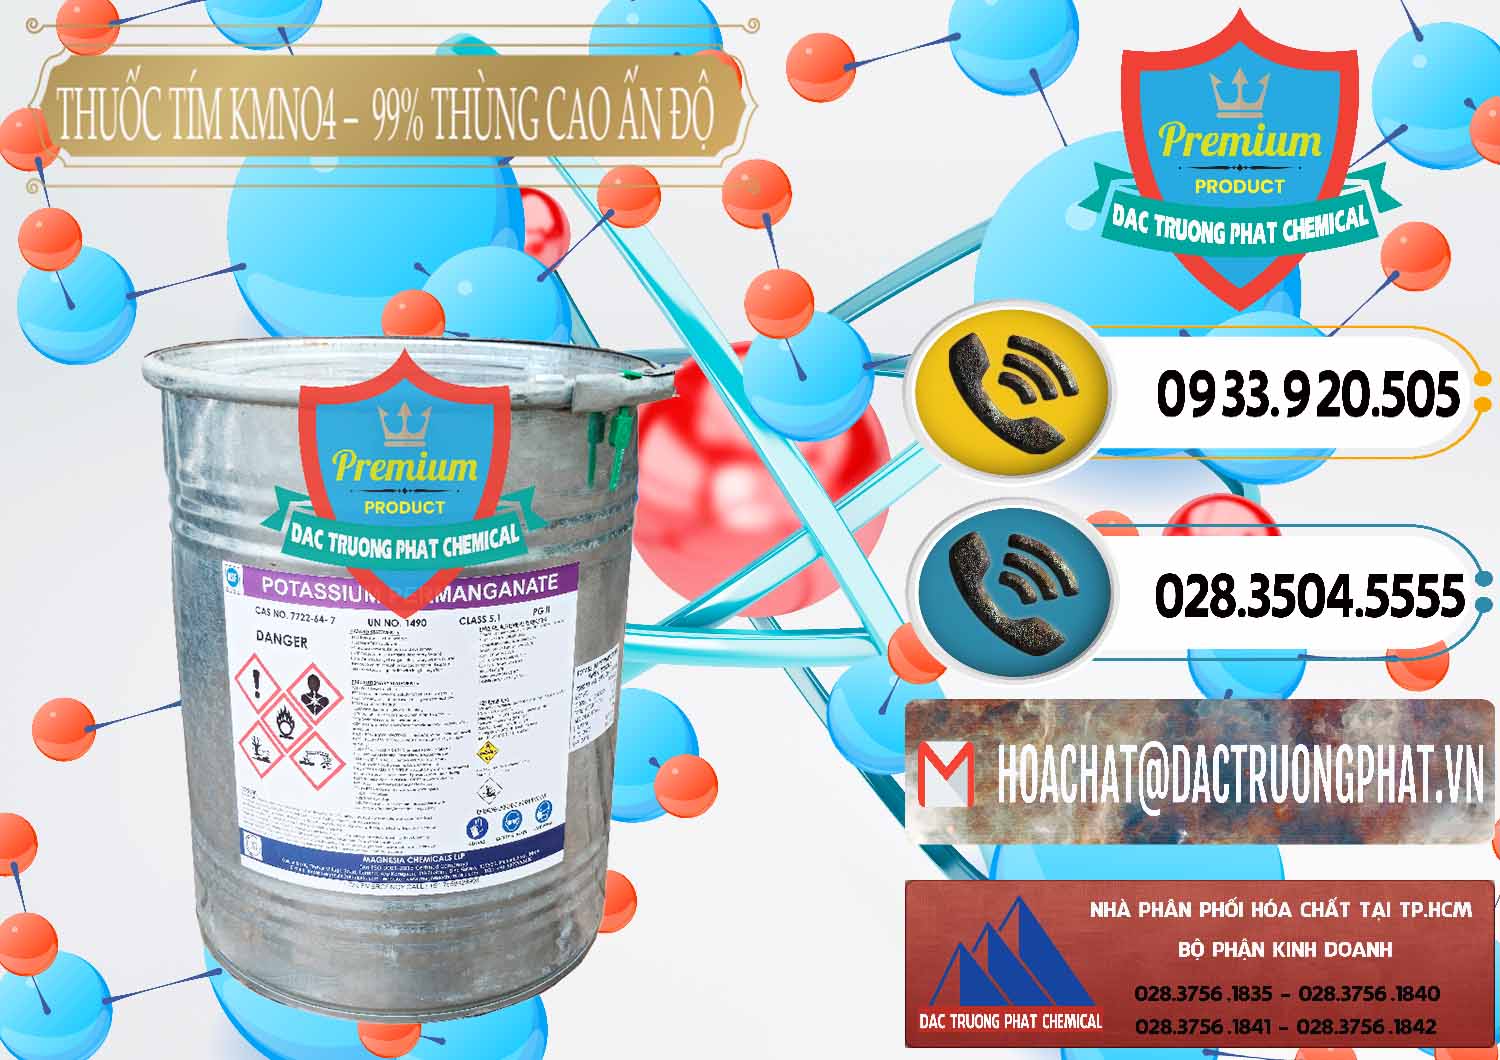 Cung cấp & bán Thuốc Tím - KMNO4 Thùng Cao 99% Magnesia Chemicals Ấn Độ India - 0164 - Công ty chuyên kinh doanh ( cung cấp ) hóa chất tại TP.HCM - hoachatdetnhuom.vn